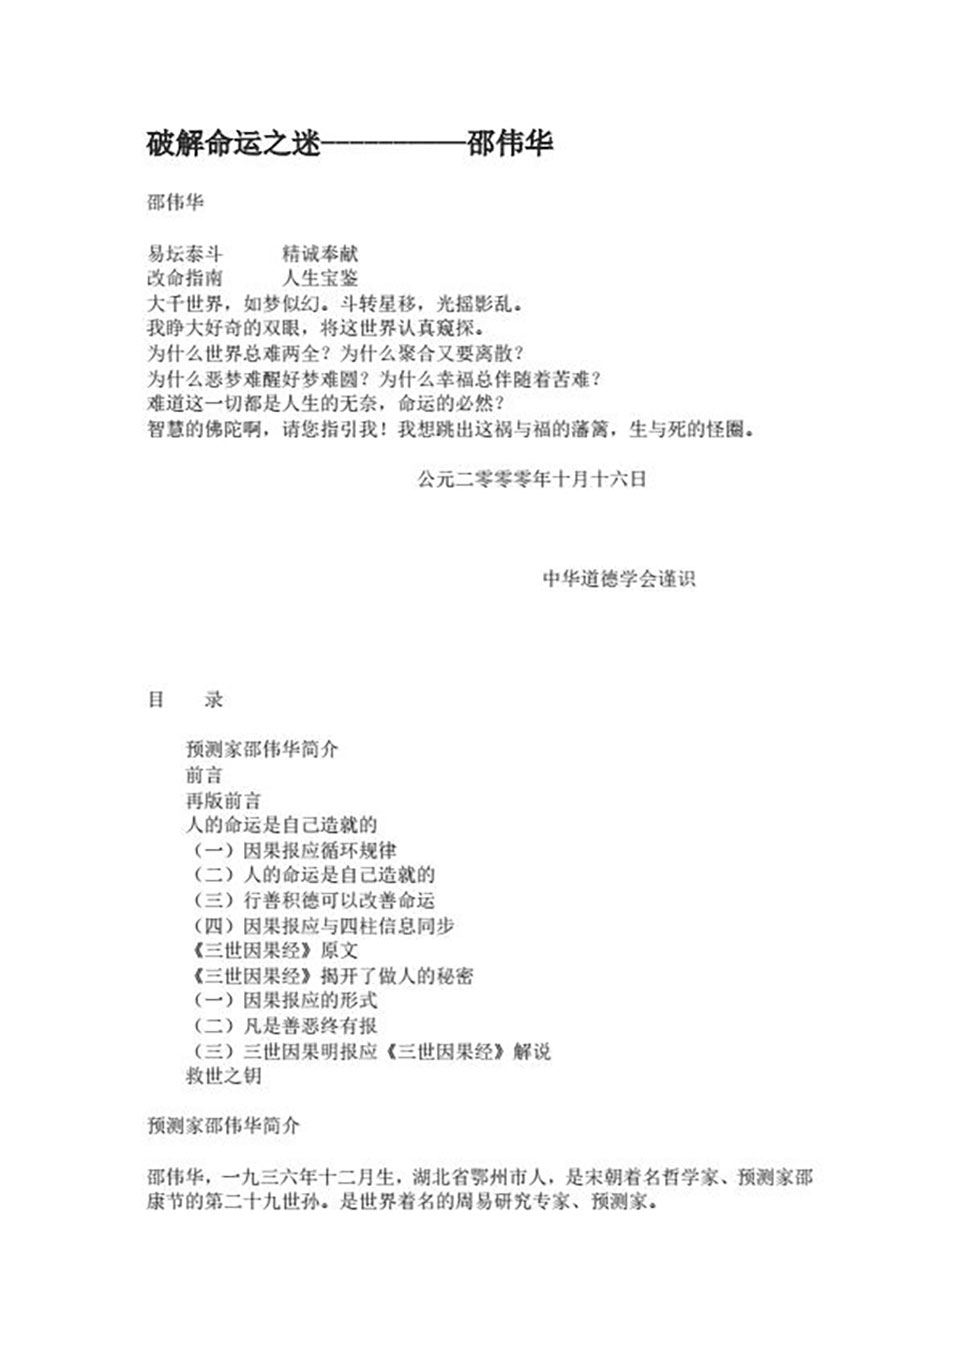 邵伟华-破解命运之迷31页.pdf